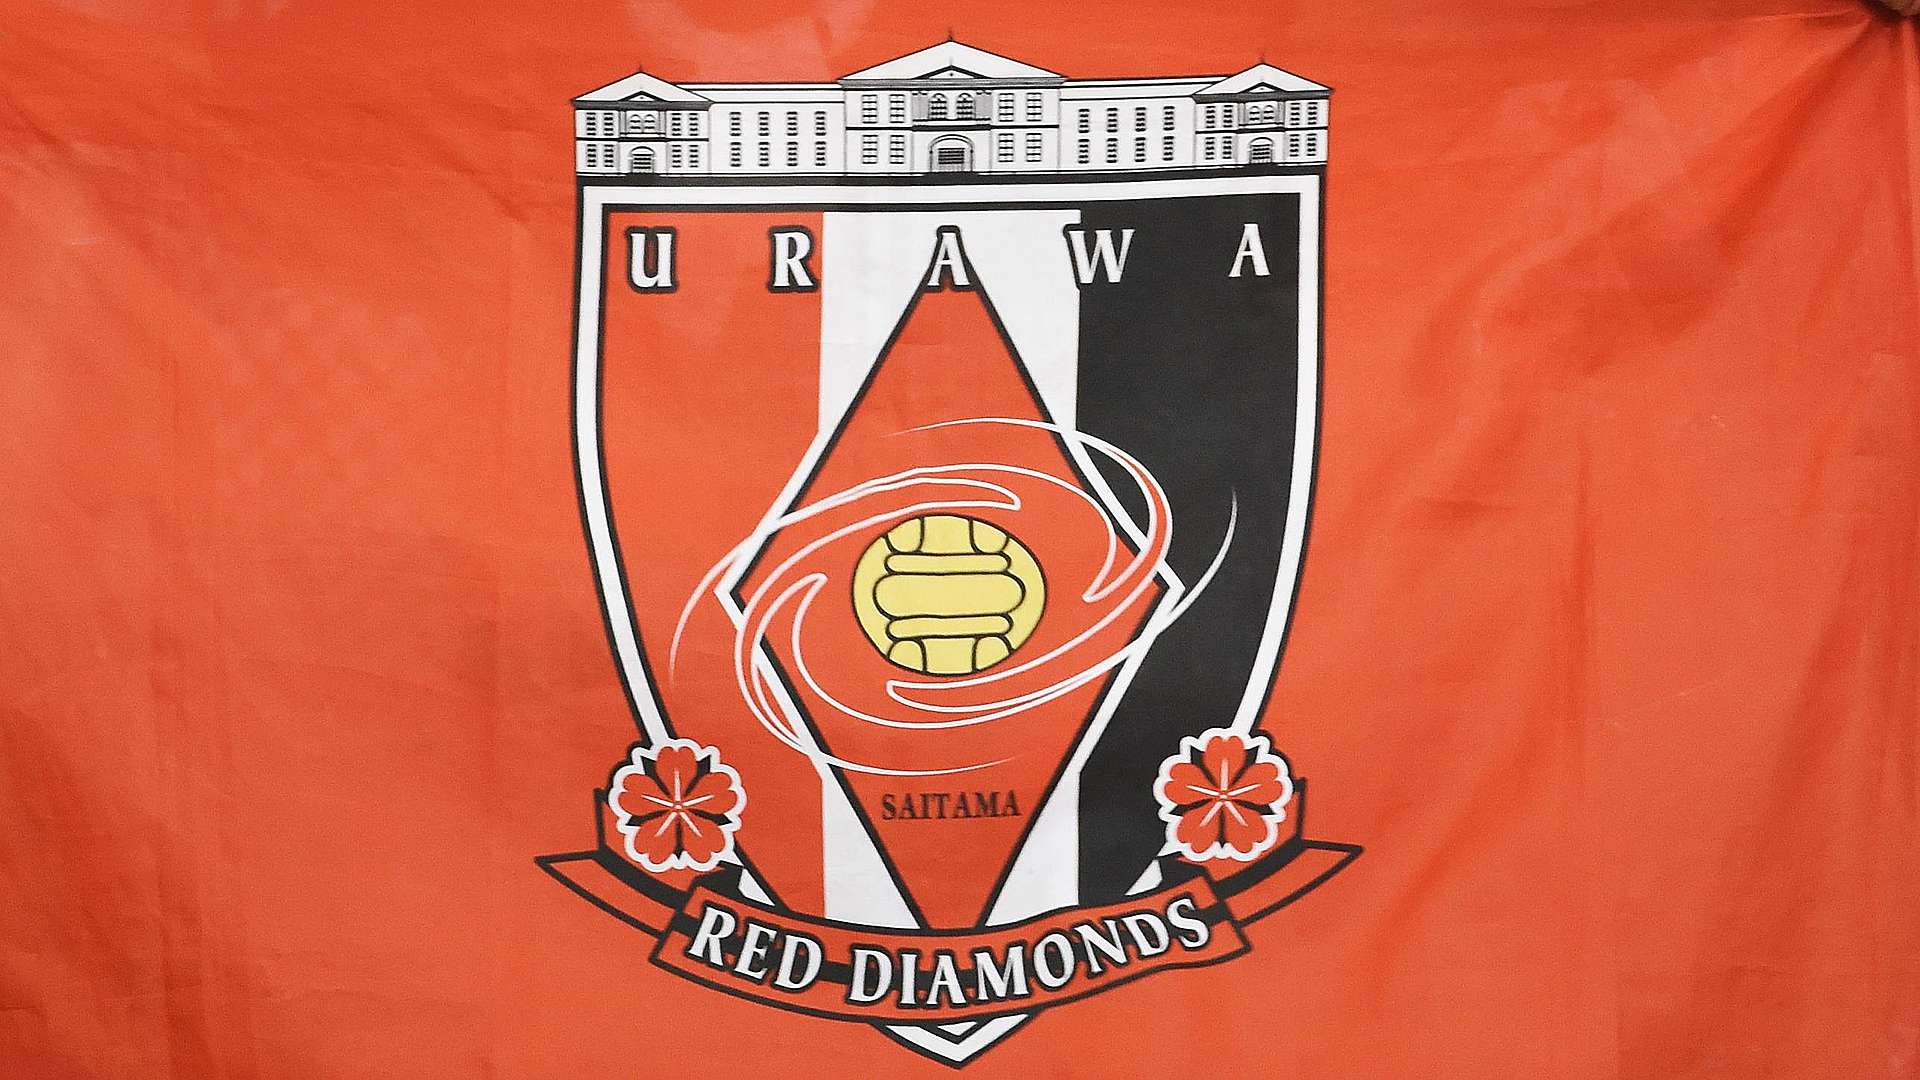 20220117_Urawa_emblem